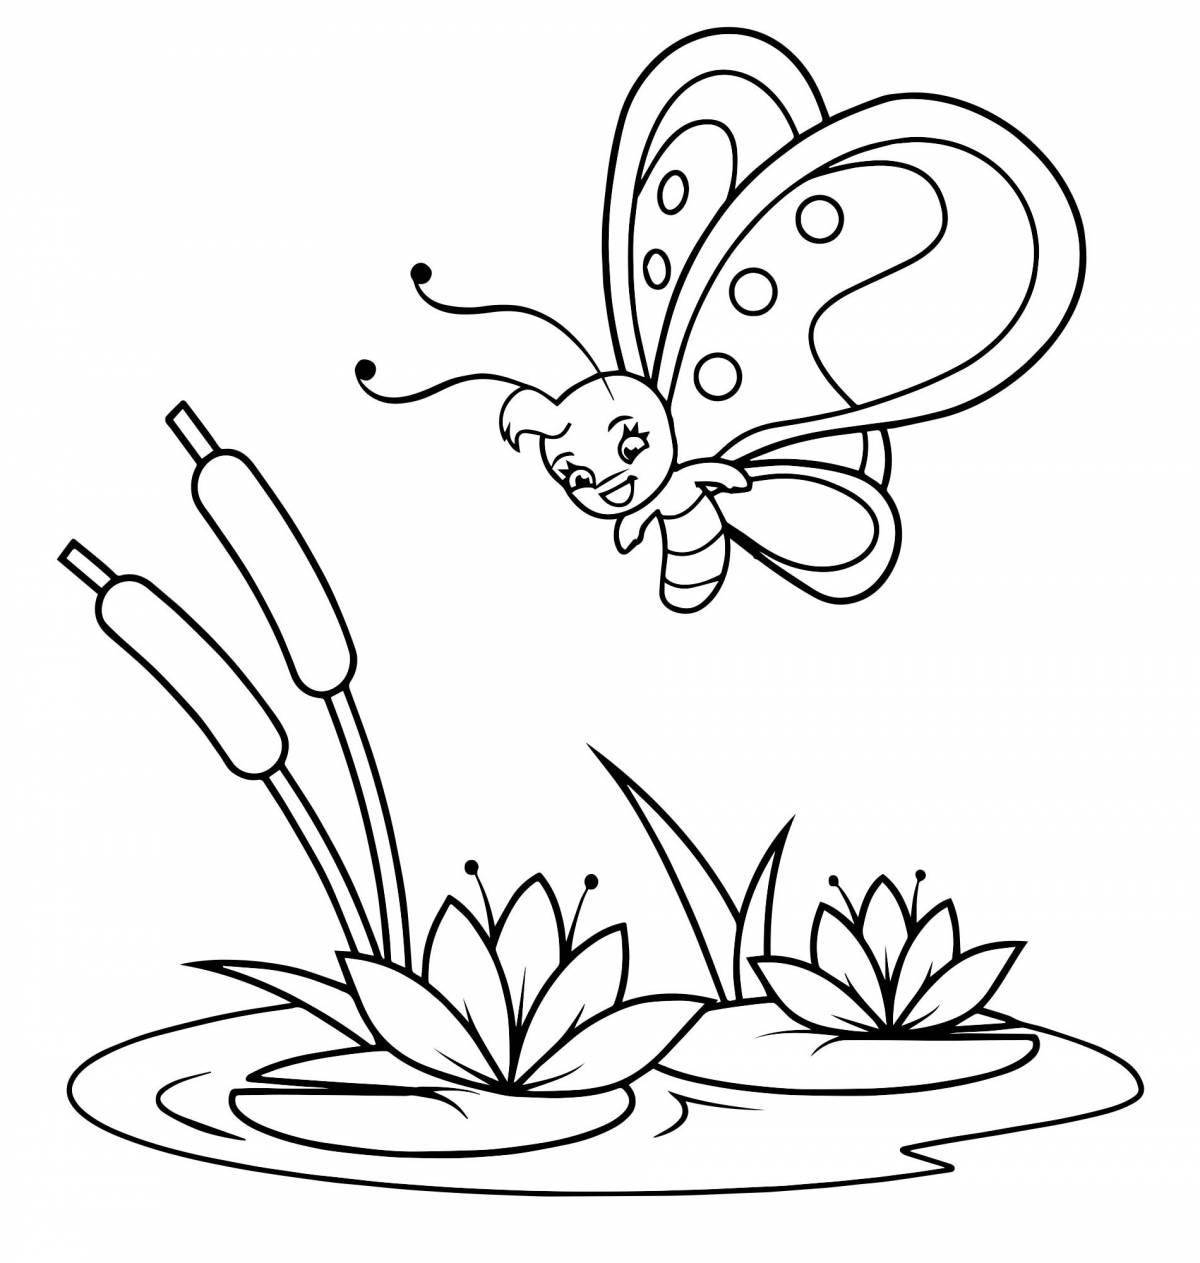 Butterfly on flower #1